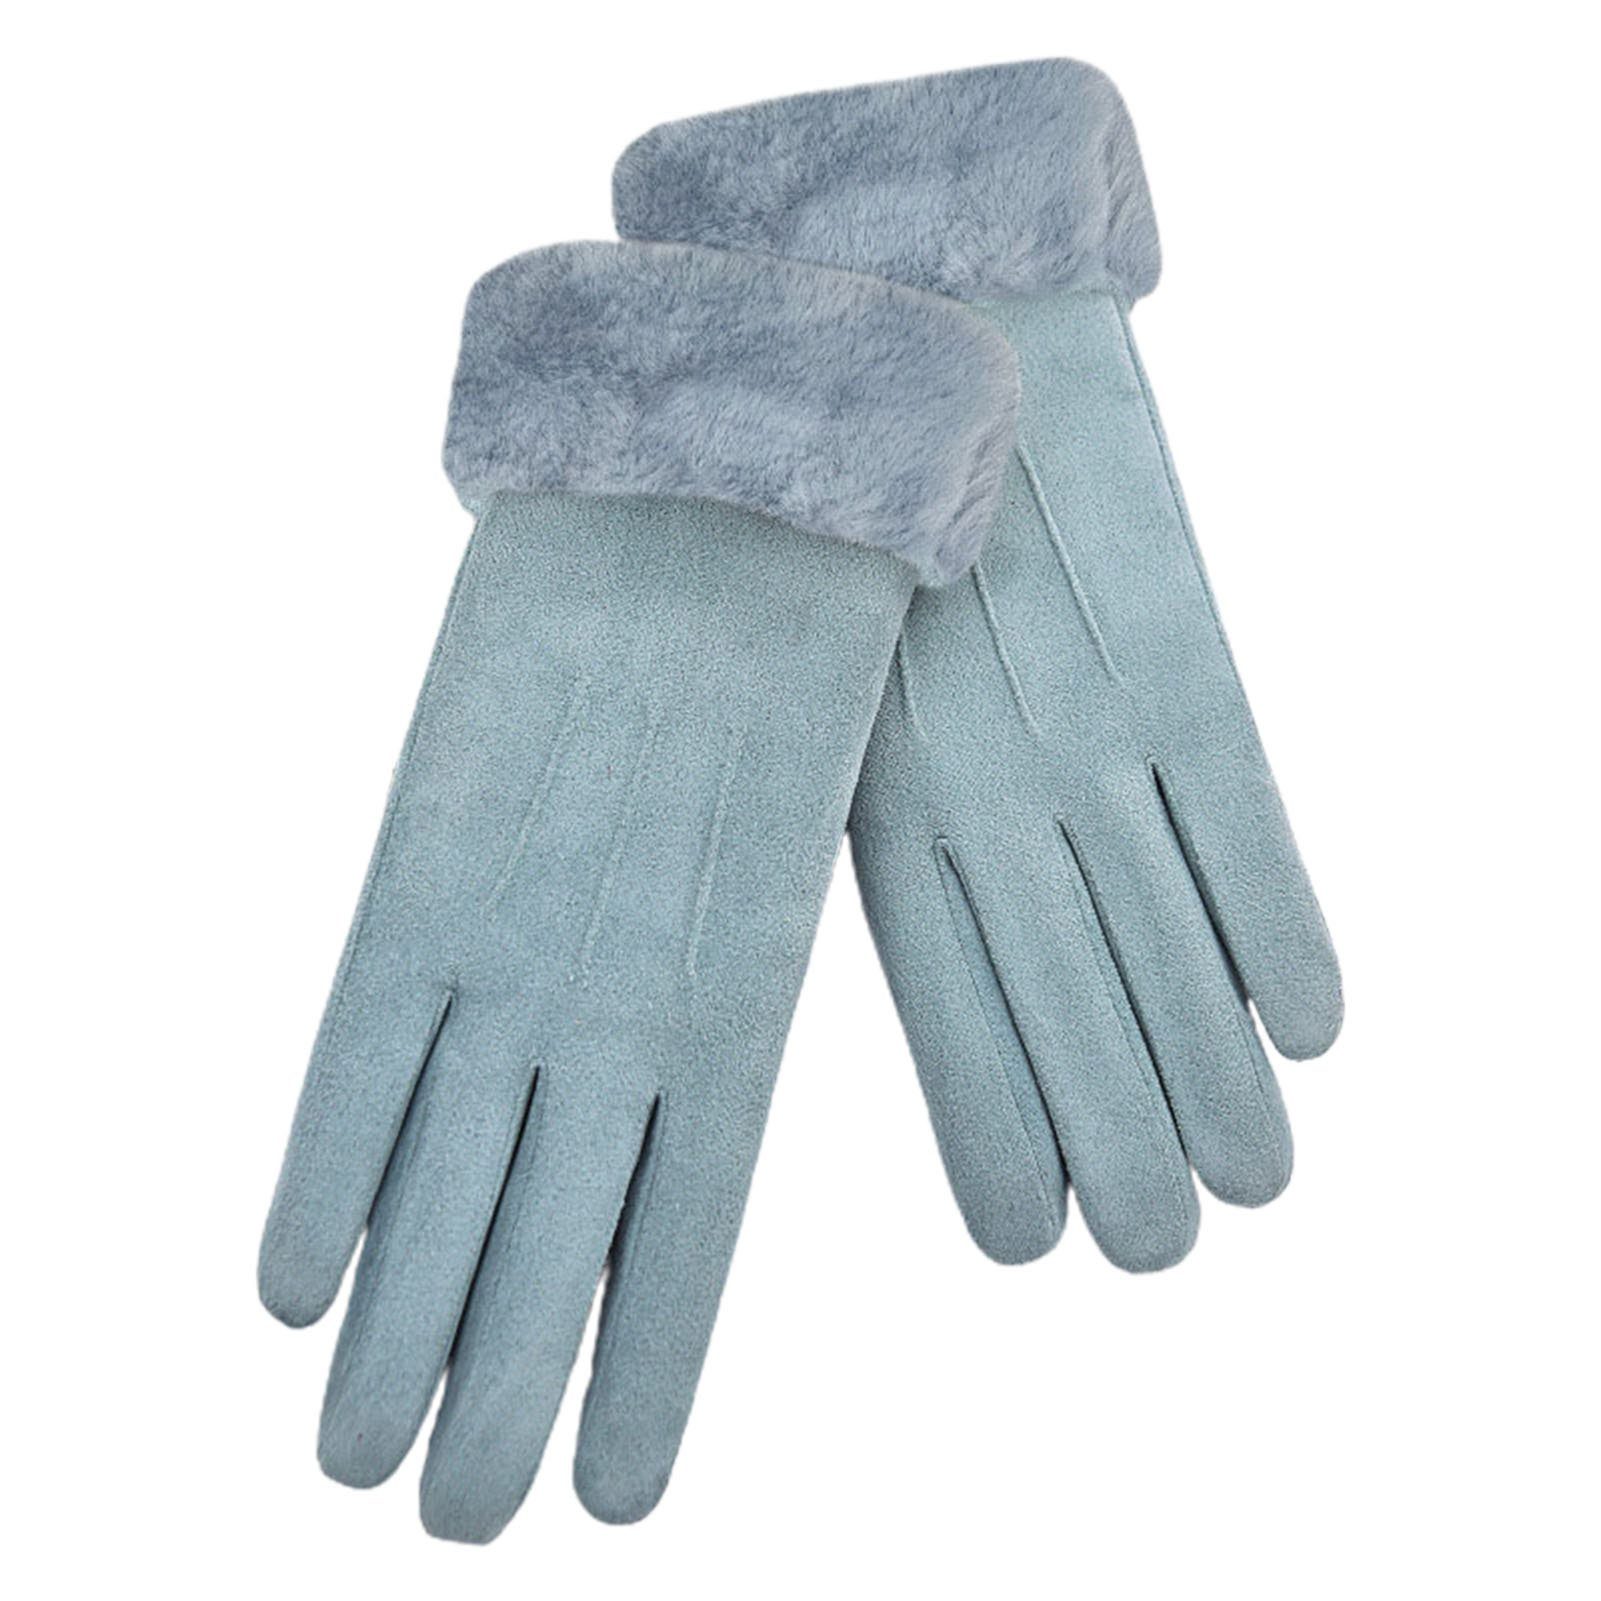 Blusmart Fleecehandschuhe Damen-Winter-Fleece-Handschuhe, Elastischer Wildlederstoff Rosa